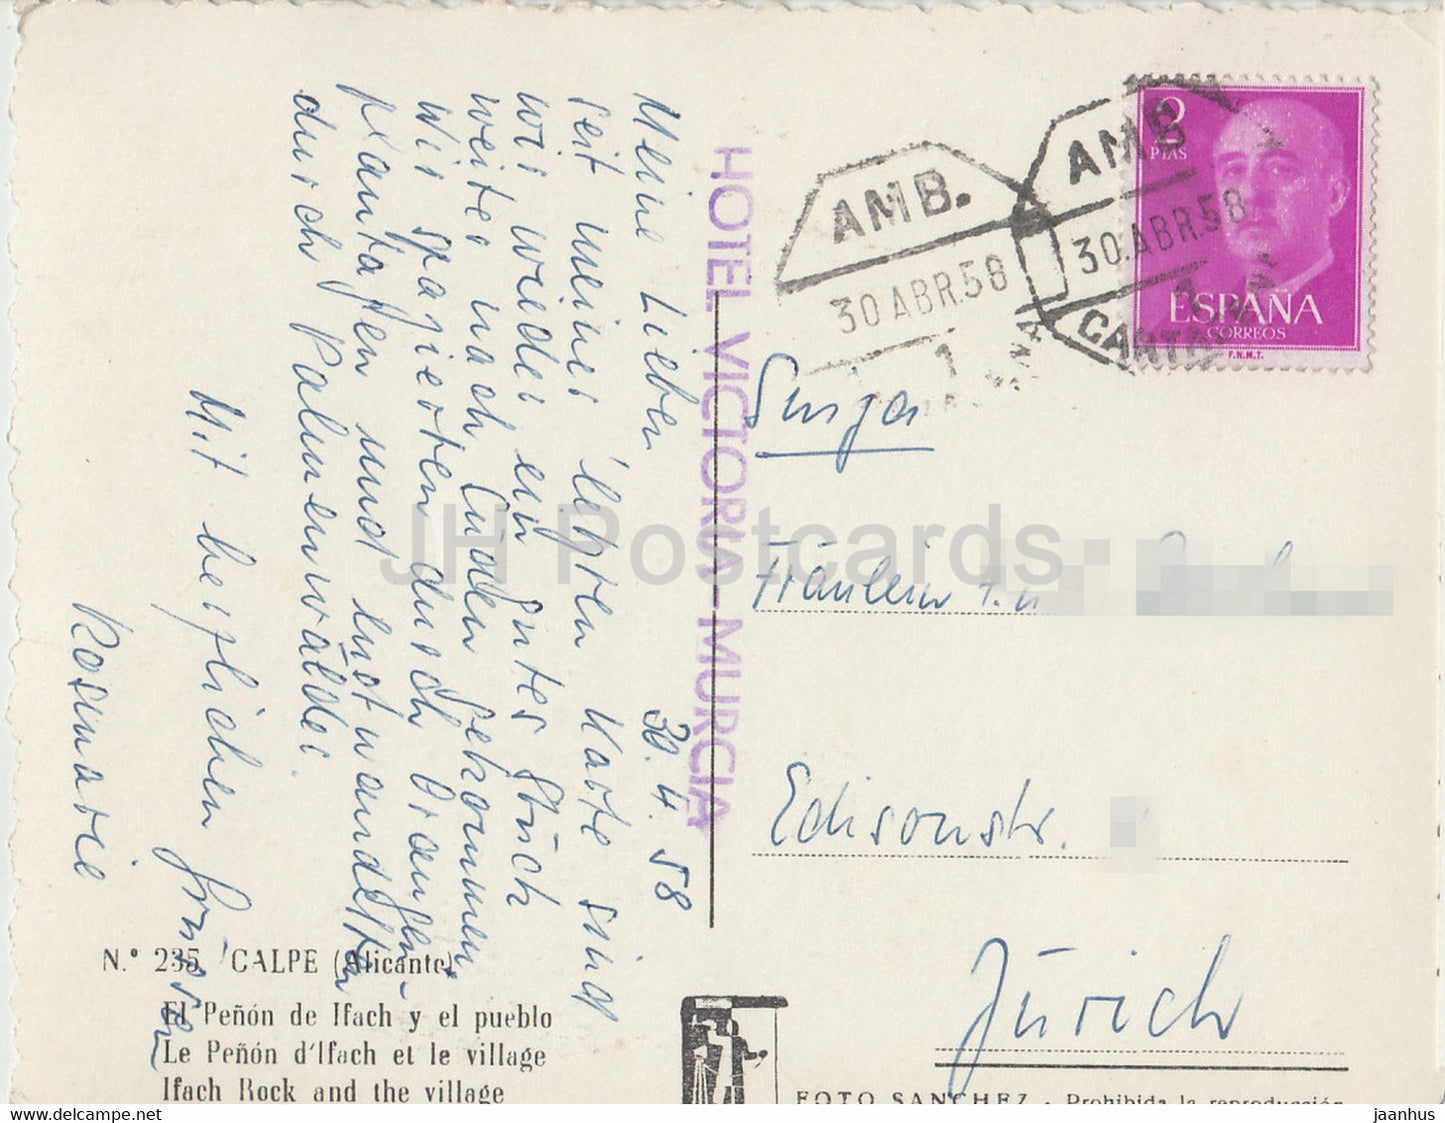 Calpe - El Penon de lfach y el pueblo - Ifach Rock and the Village - carte postale ancienne - 1958 - Espagne - utilisé